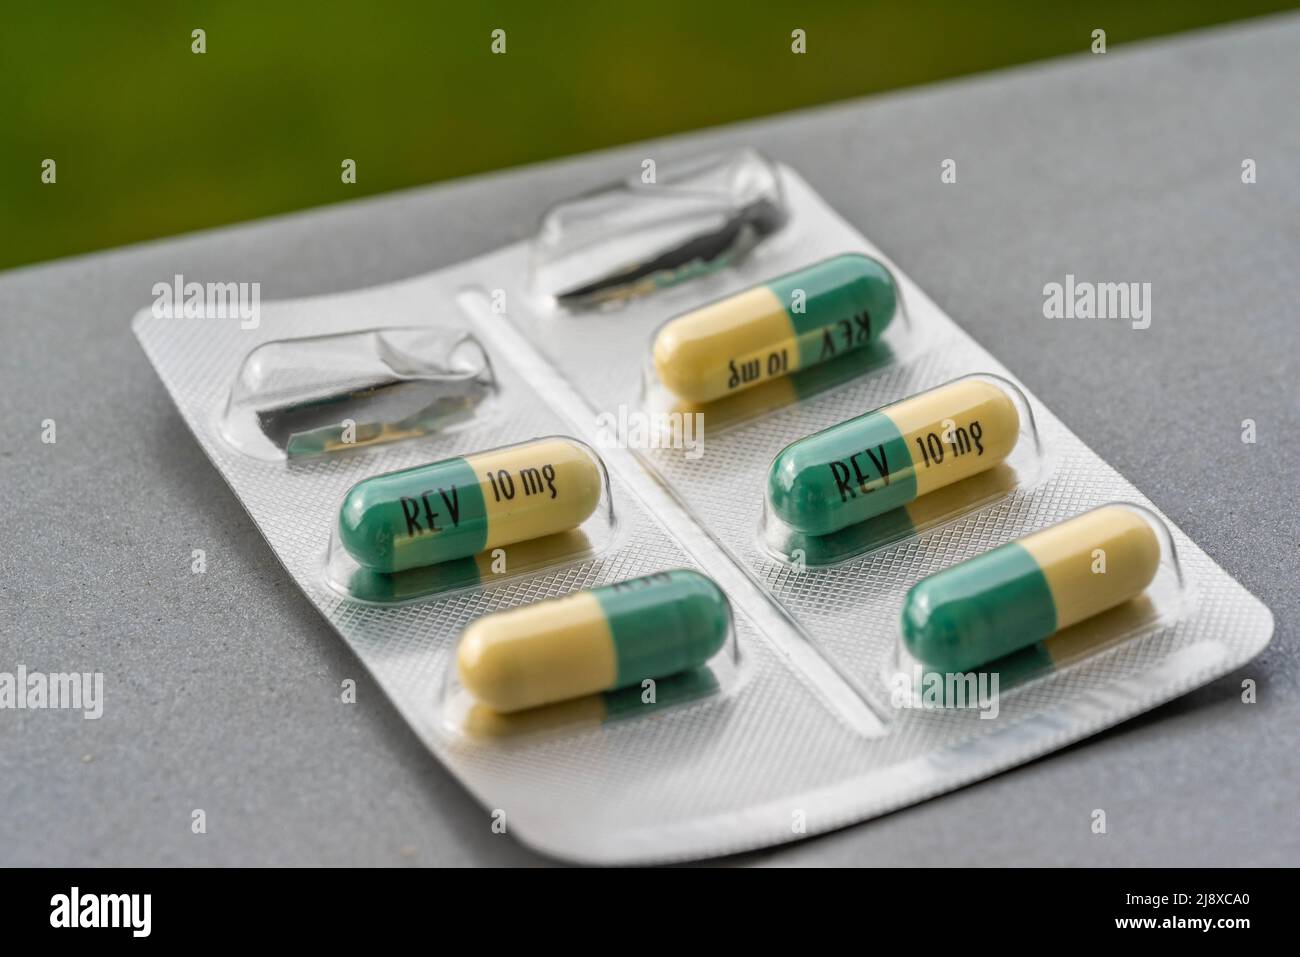 Primer plano de un envase blíster para tabletas Revlimid 10mg - medicamento para tratar el mieloma múltiple Foto de stock